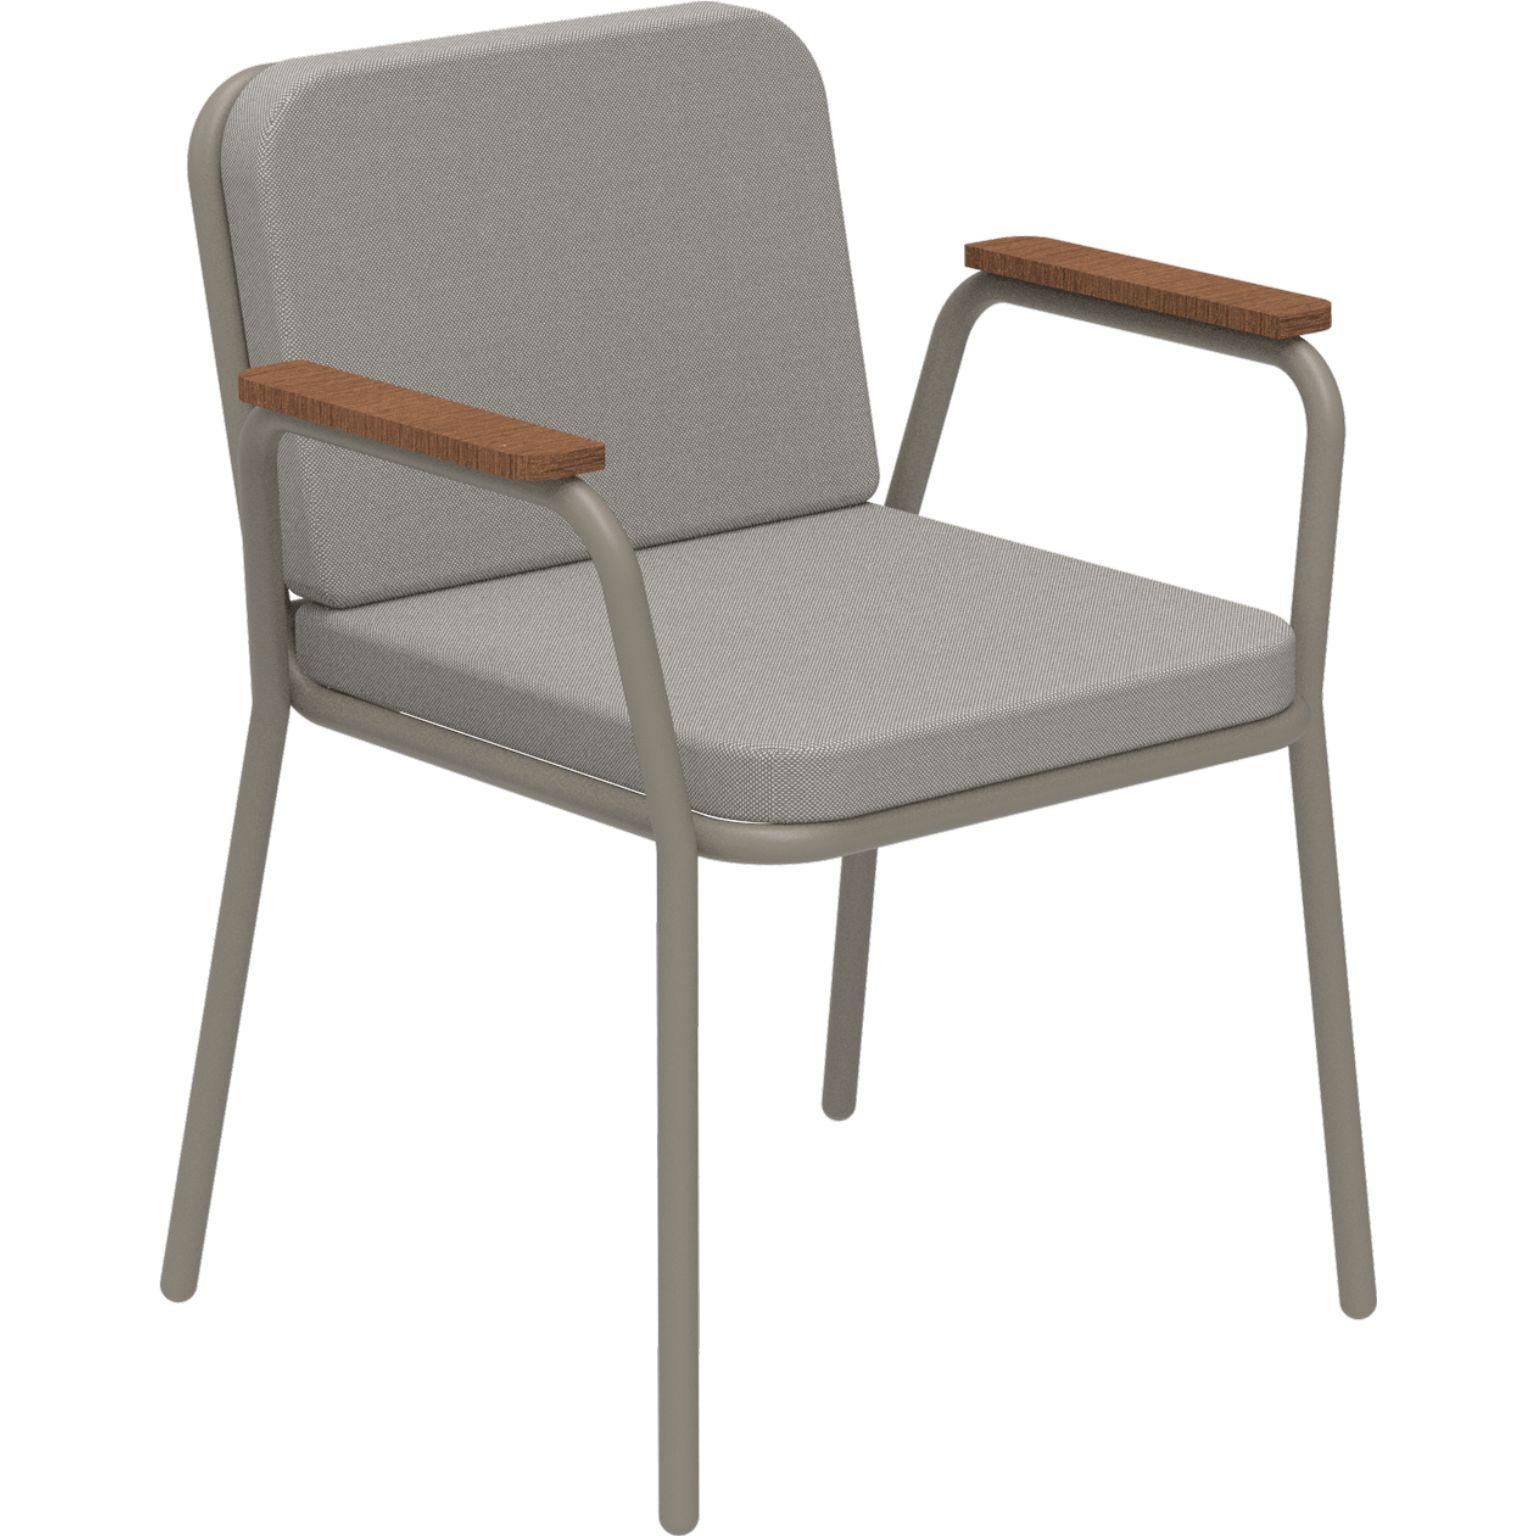 Nature Cream Sessel von MOWEE
Abmessungen: T60 x B67 x H83 cm (Sitzhöhe 42 cm).
MATERIAL: Aluminium, Polsterung und Iroko-Holz.
Gewicht: 5 kg.
Auch in verschiedenen Farben und Ausführungen erhältlich. Bitte kontaktieren Sie uns.

Eine Collection'S,